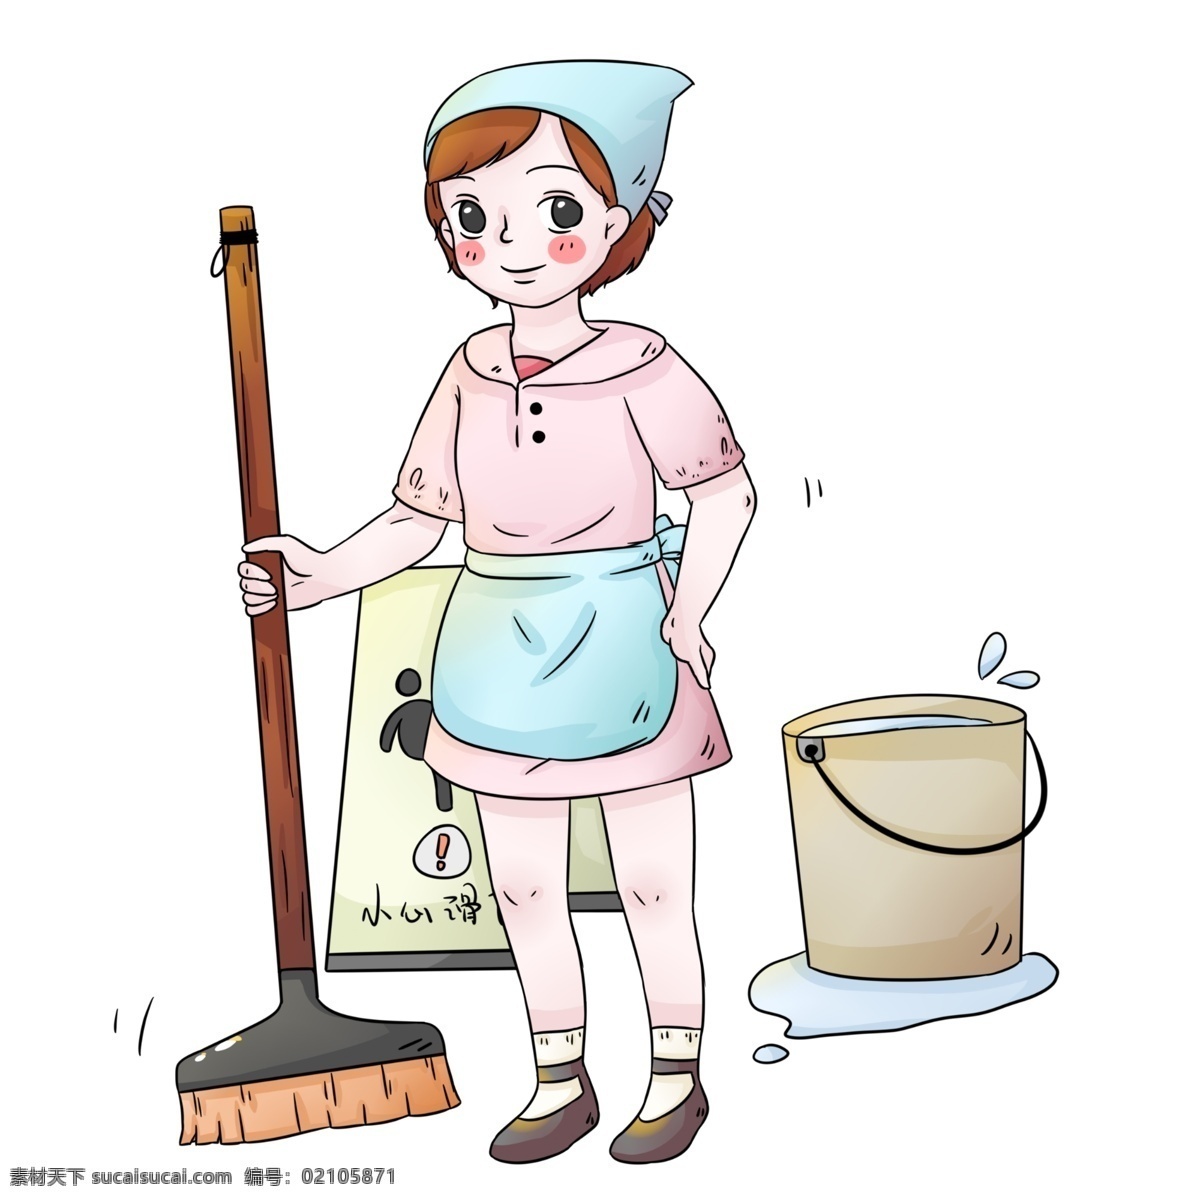 手绘 卡通 社区服务 打扫 阿姨 女孩 打扫卫生 清洁 清洁服务 小心地滑图标 扫把 水桶 女生